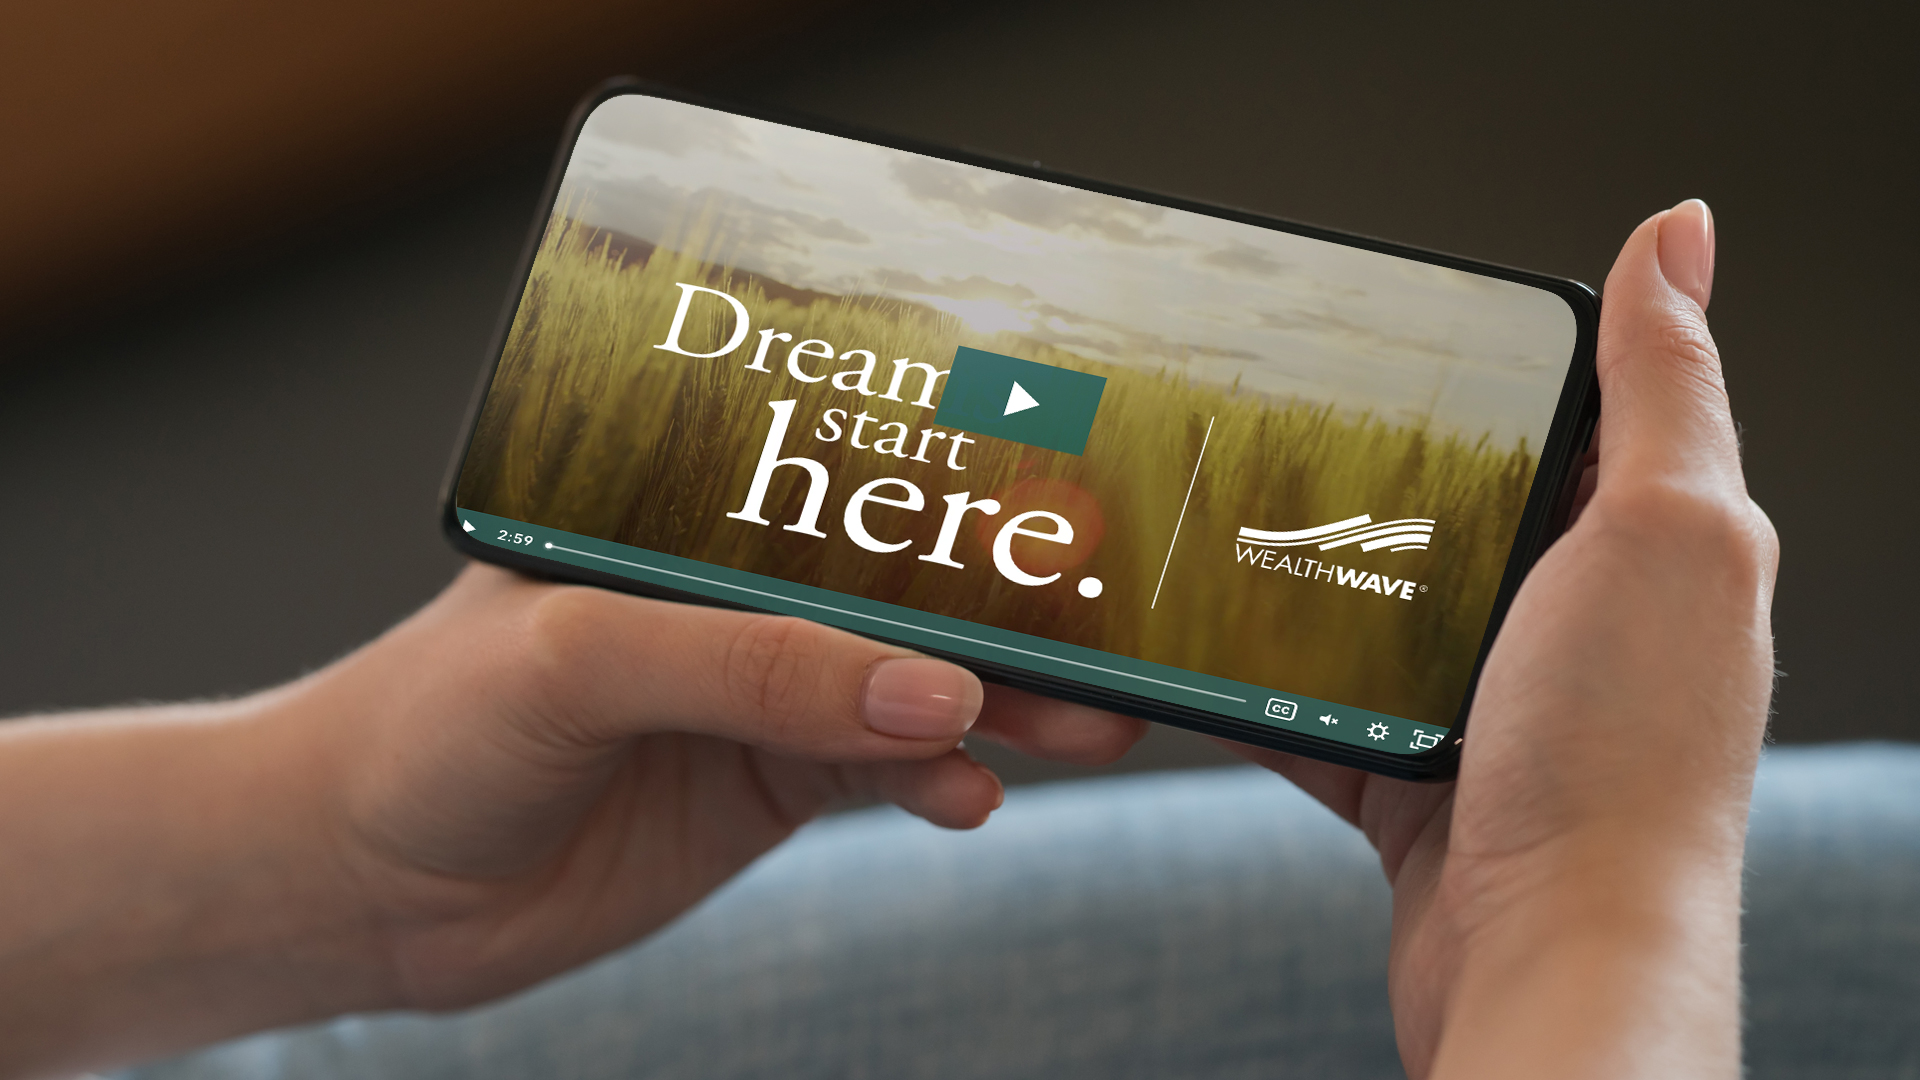 "सपने यहां शुरू होते हैं" वीडियो: एक सच्चा क्लासिक, अभी भी हमारे वेल्थवेव मार्केटिंग का एक मुख्य हिस्सा